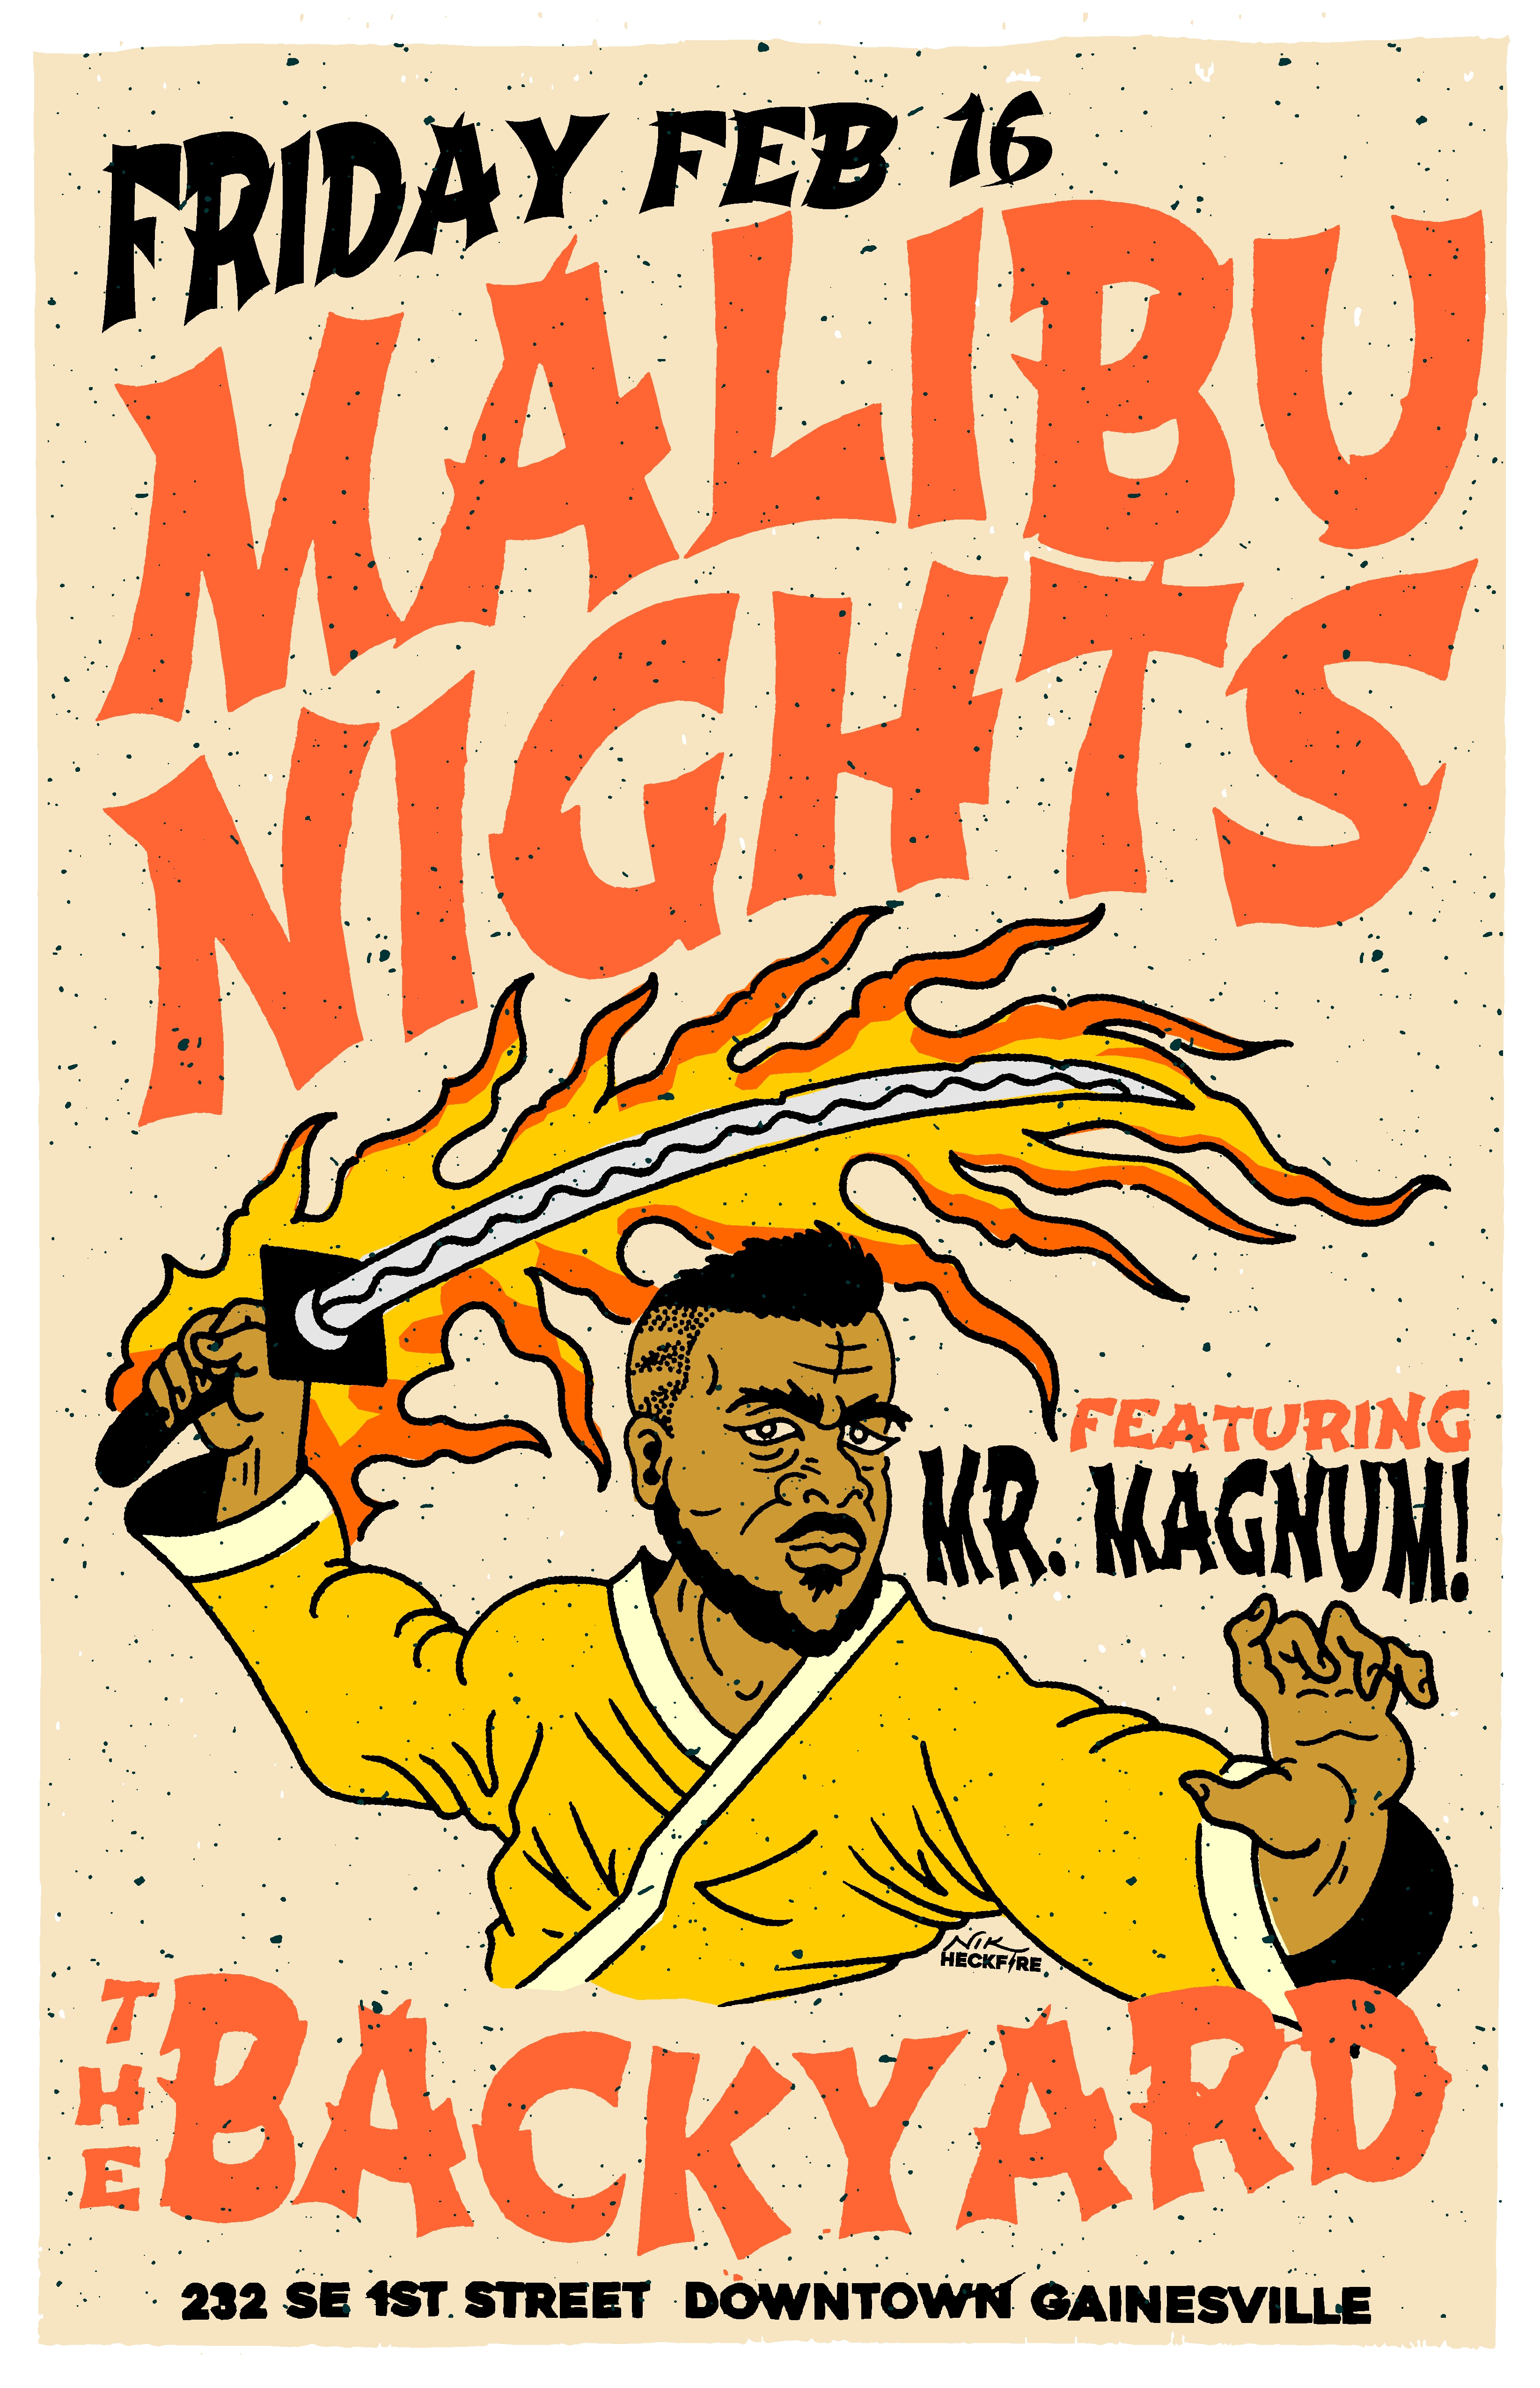 Malibu Nights featuring Mr. Magnum